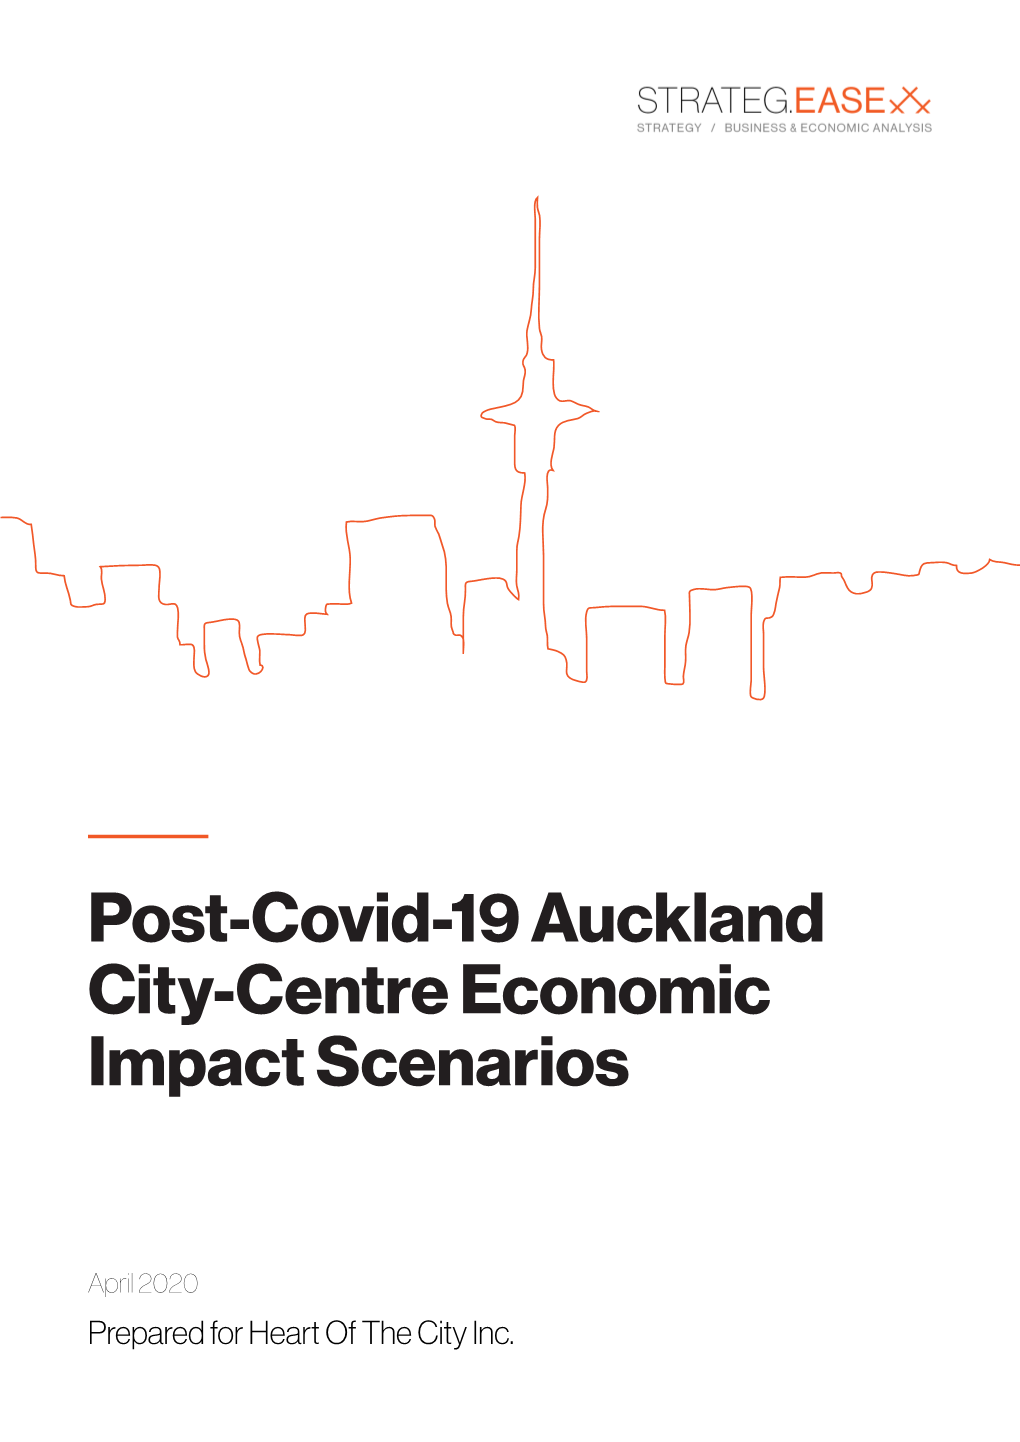 Post-Covid-19 Auckland City-Centre Economic Impact Scenarios